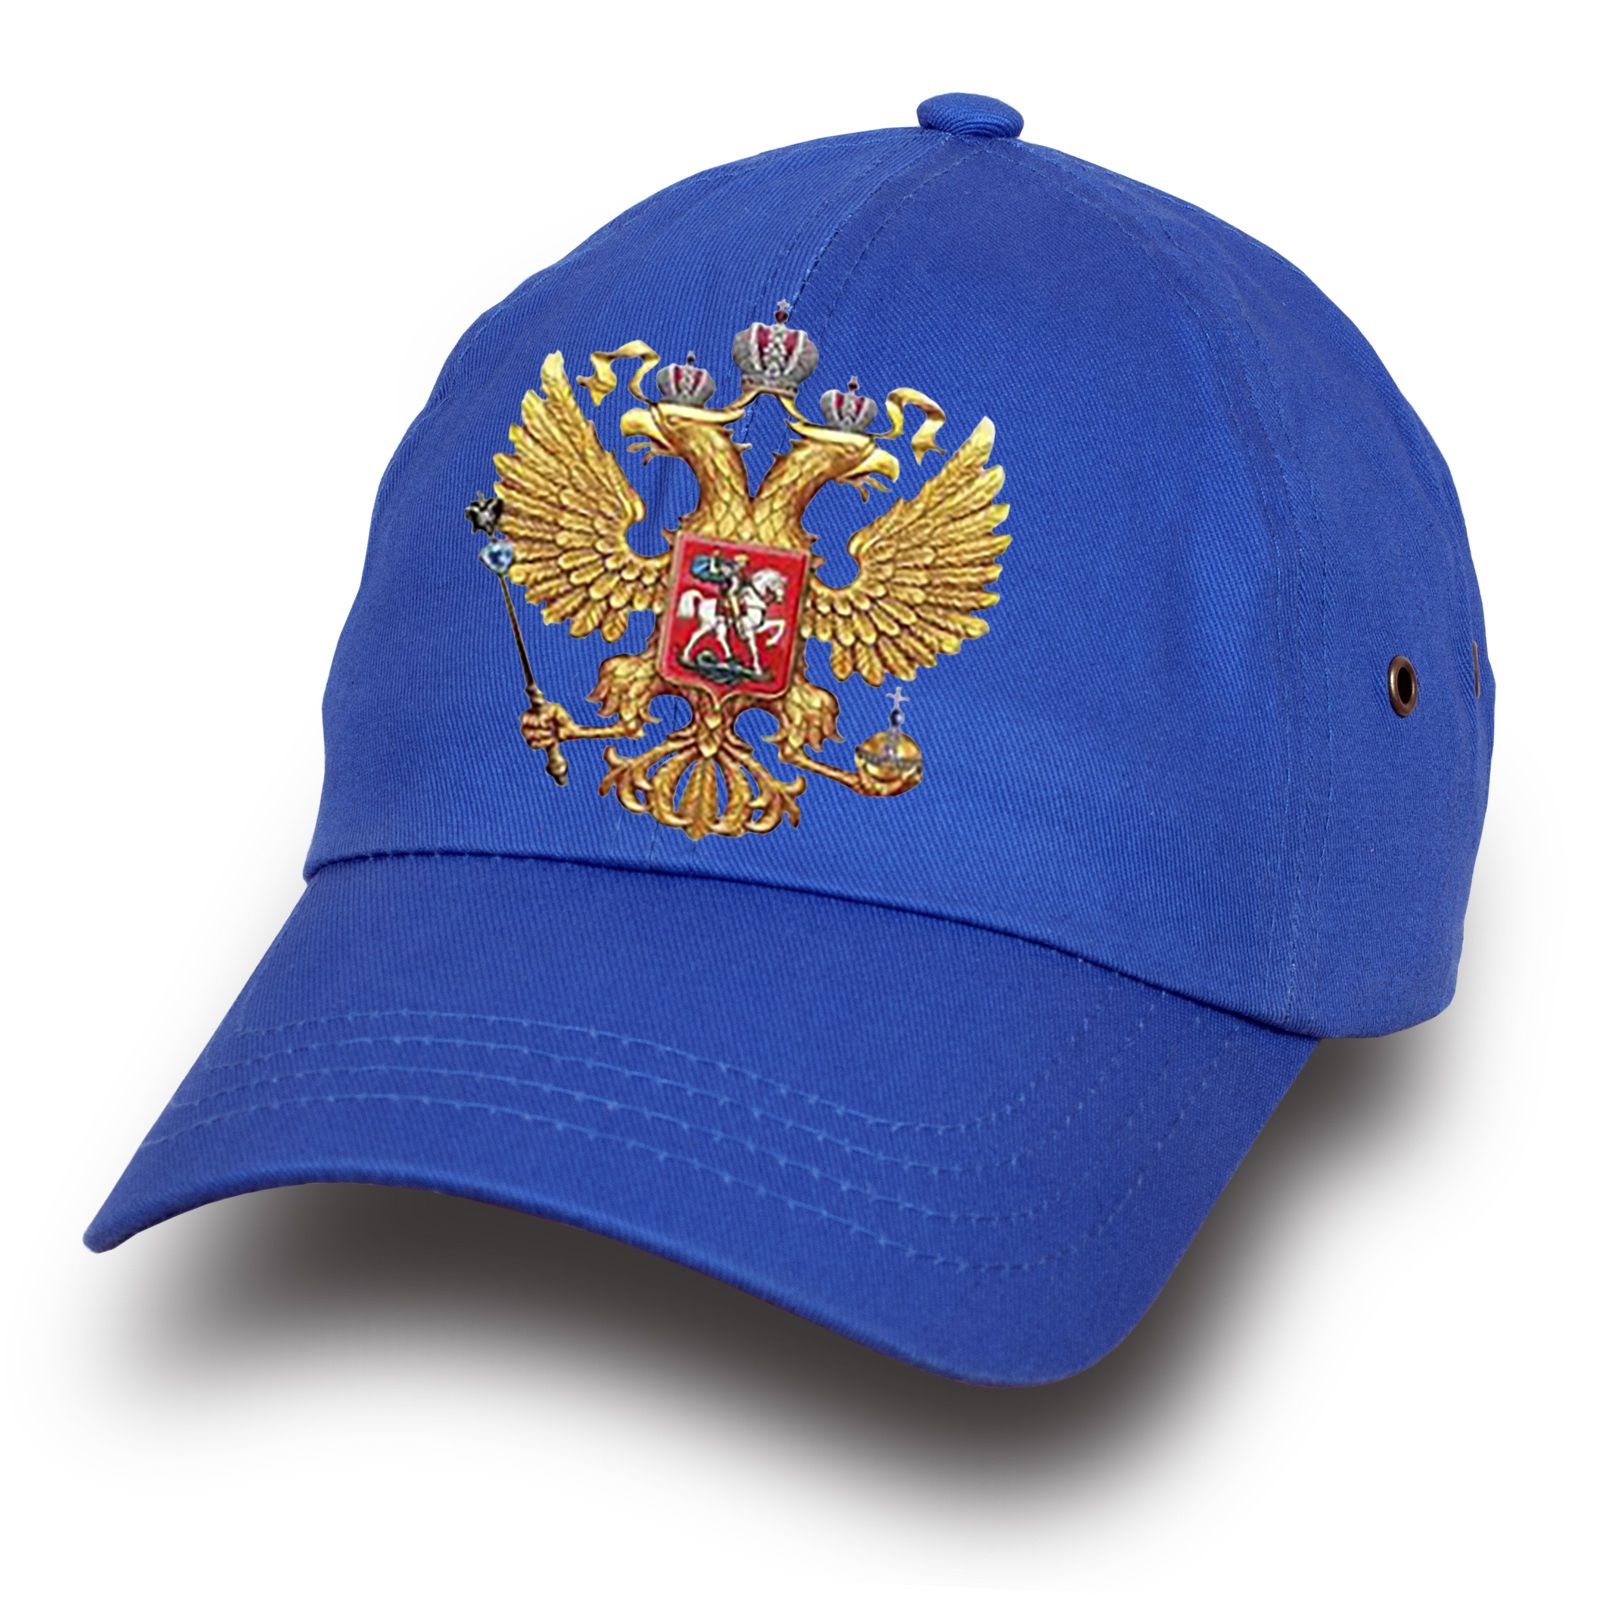 Купить онлайн бейсболку с российским гербом по лояльной цене